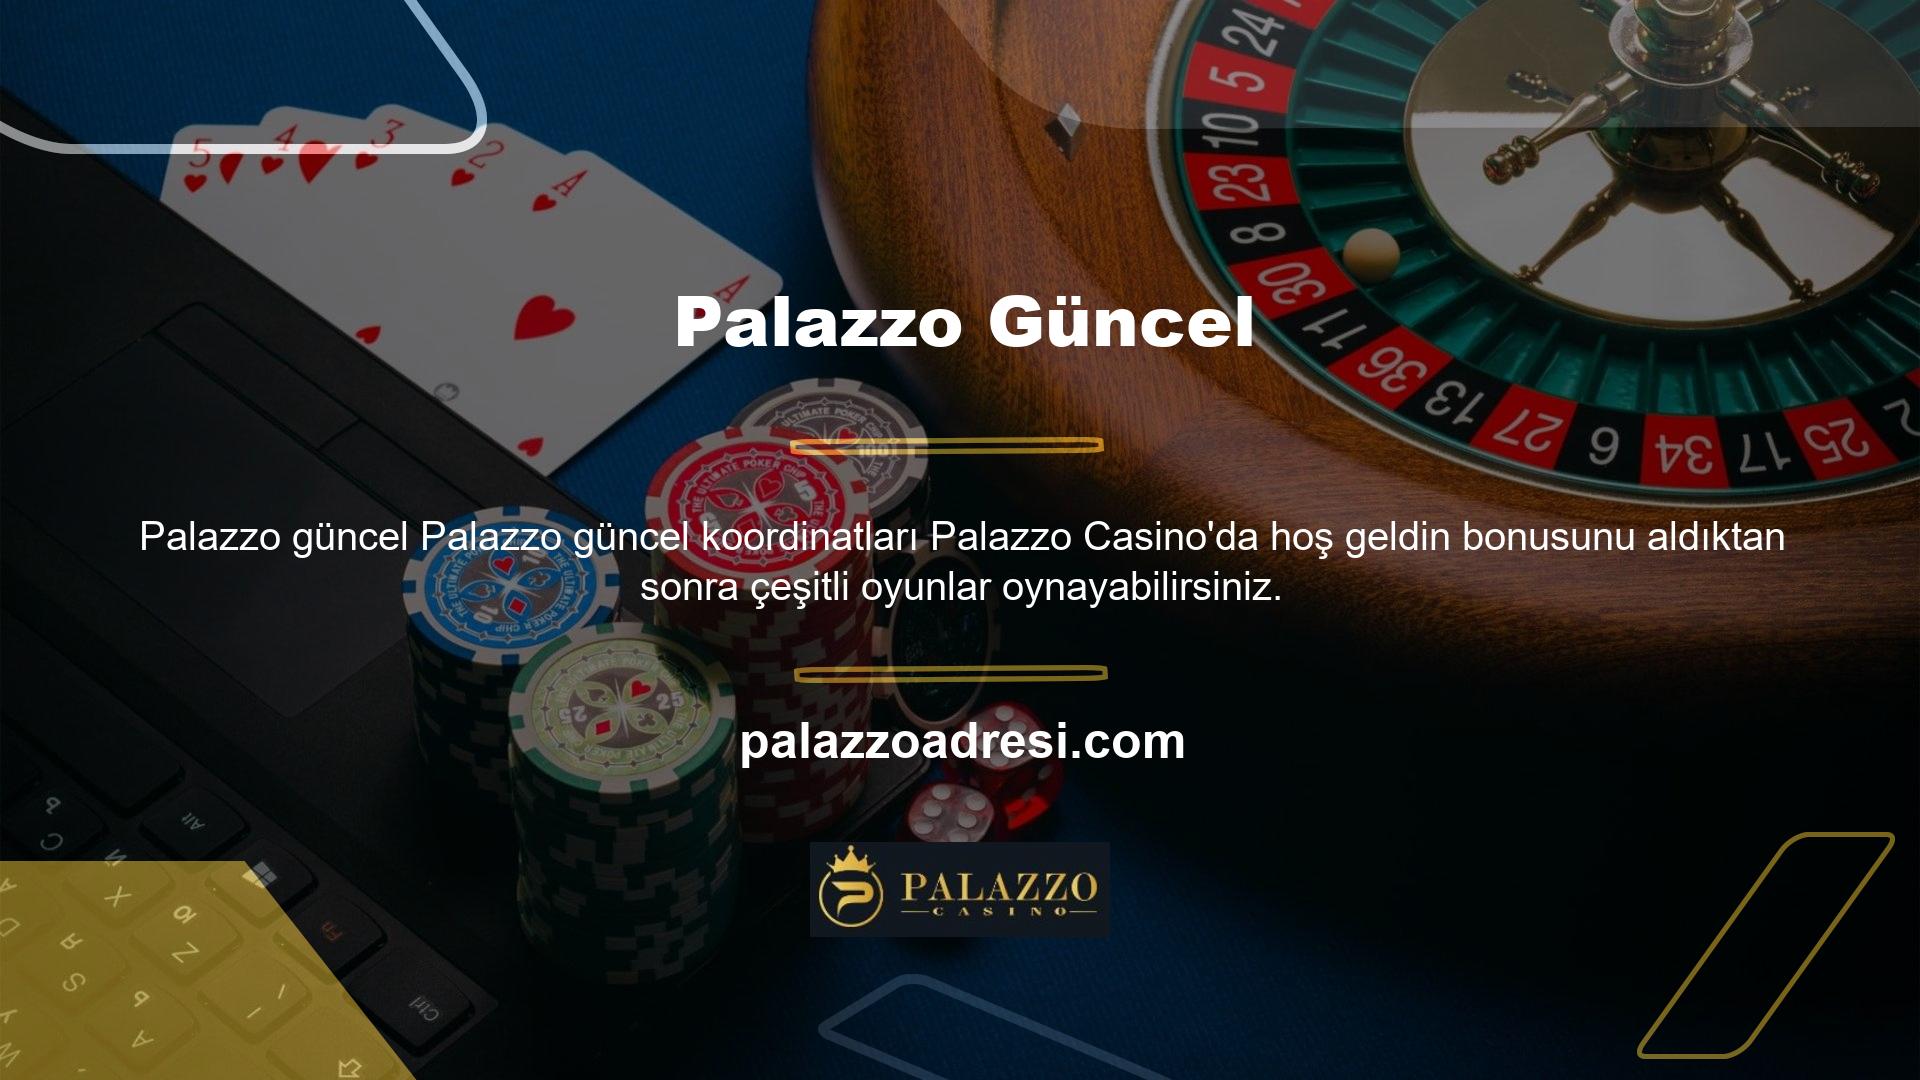 Site, önde gelen oyun sağlayıcılarla iş birliği içinde bir casino kataloğu ve canlı casino içerir